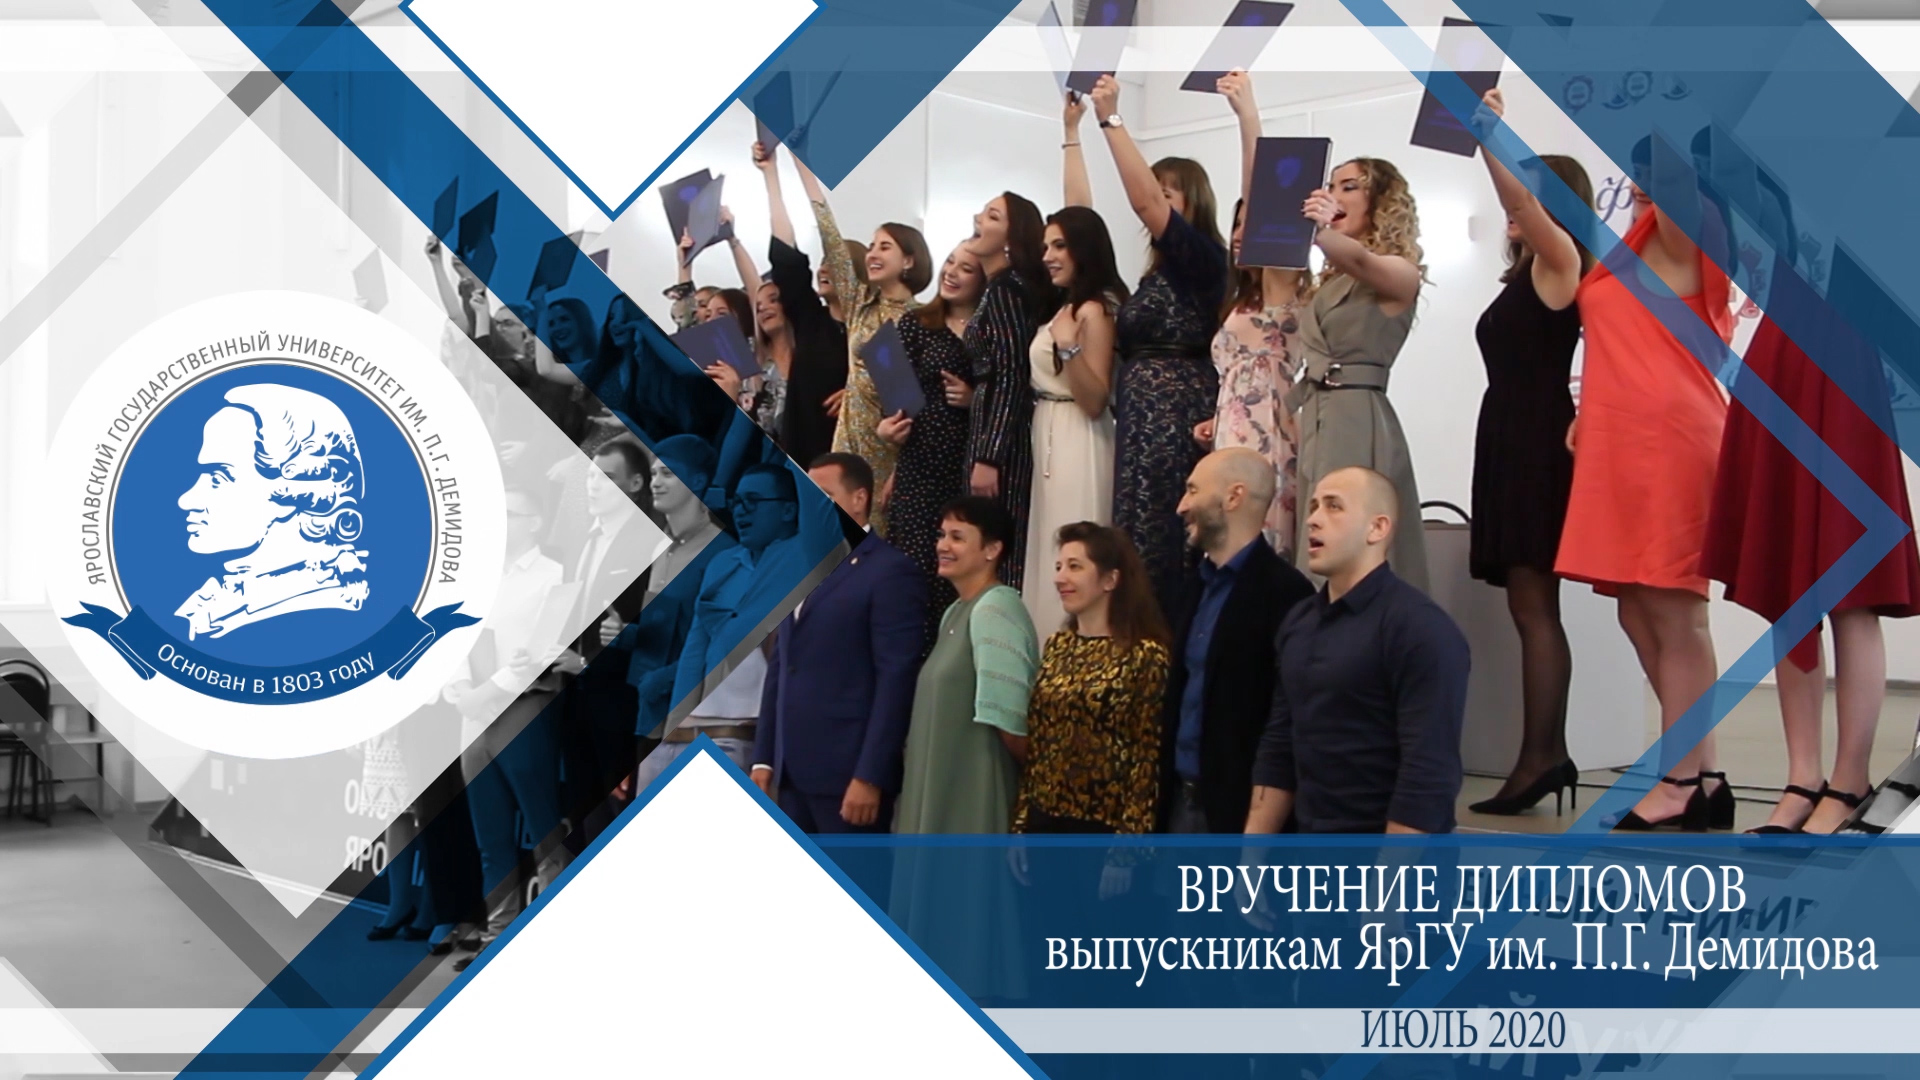 Вручение дипломов выпускникам ЯрГУ им. П.Г. Демидова - 2020